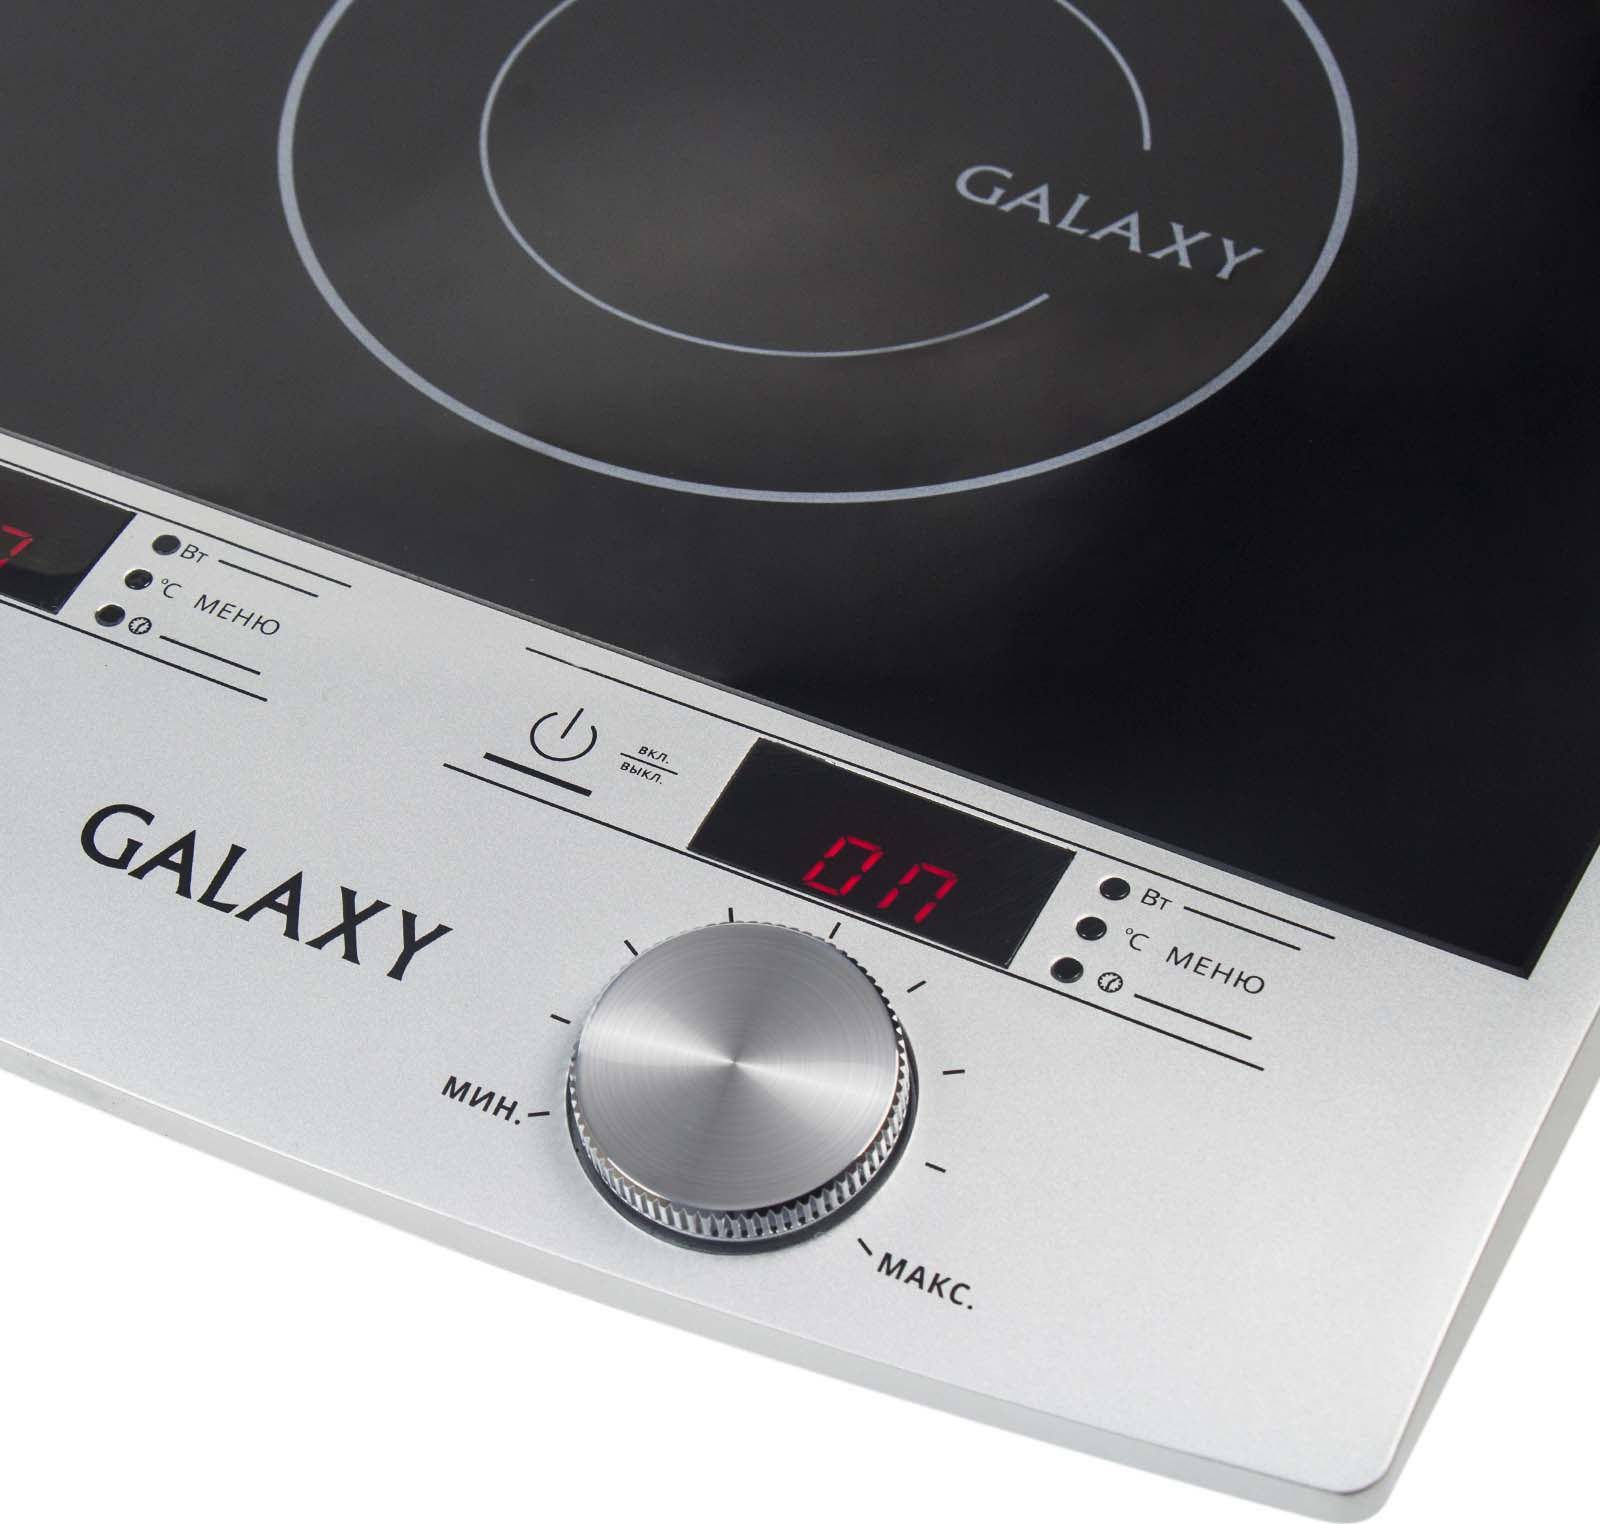    Galaxy GL 3057, : , 